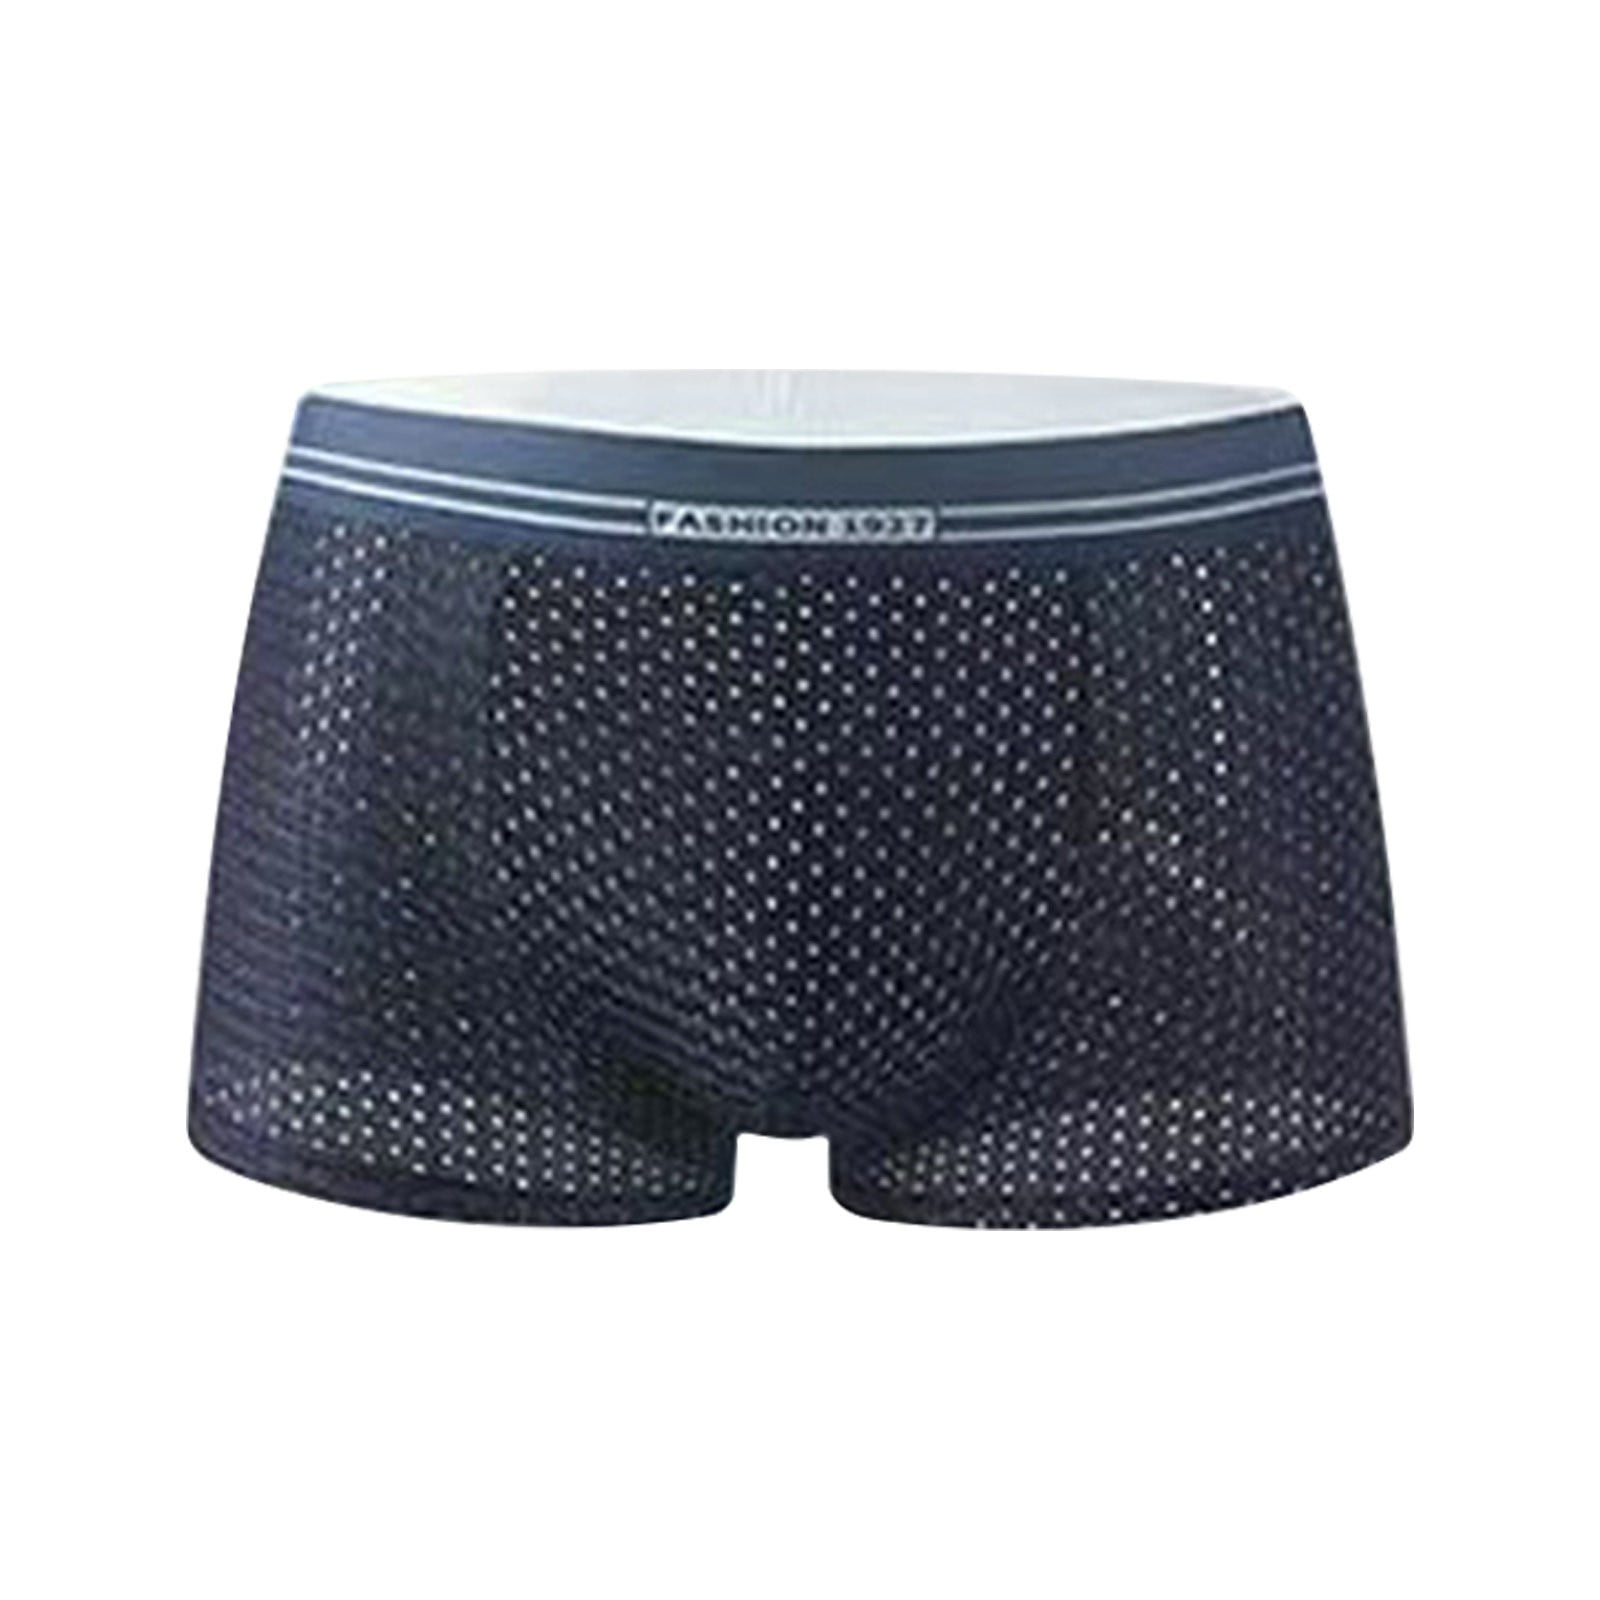 Spandex Underwear Men